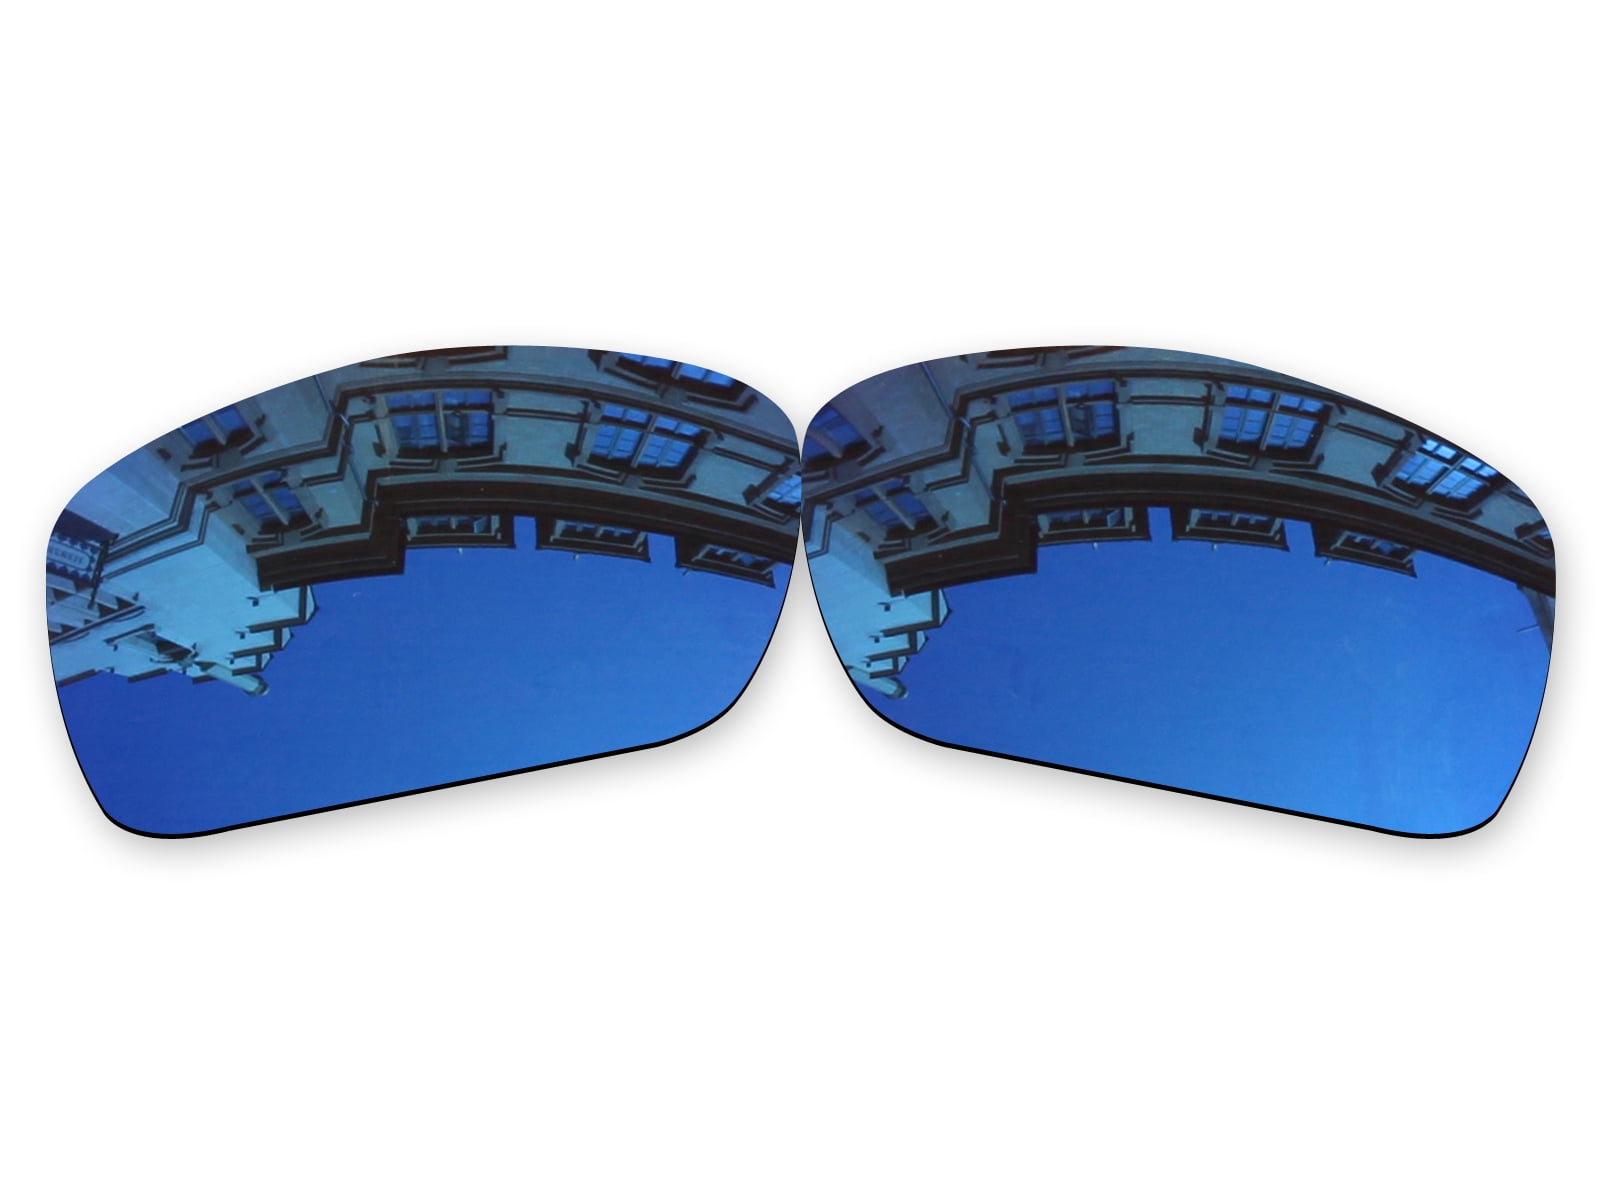 Costa Del Mar Corbina Pro Sunglasses - Melton Tackle